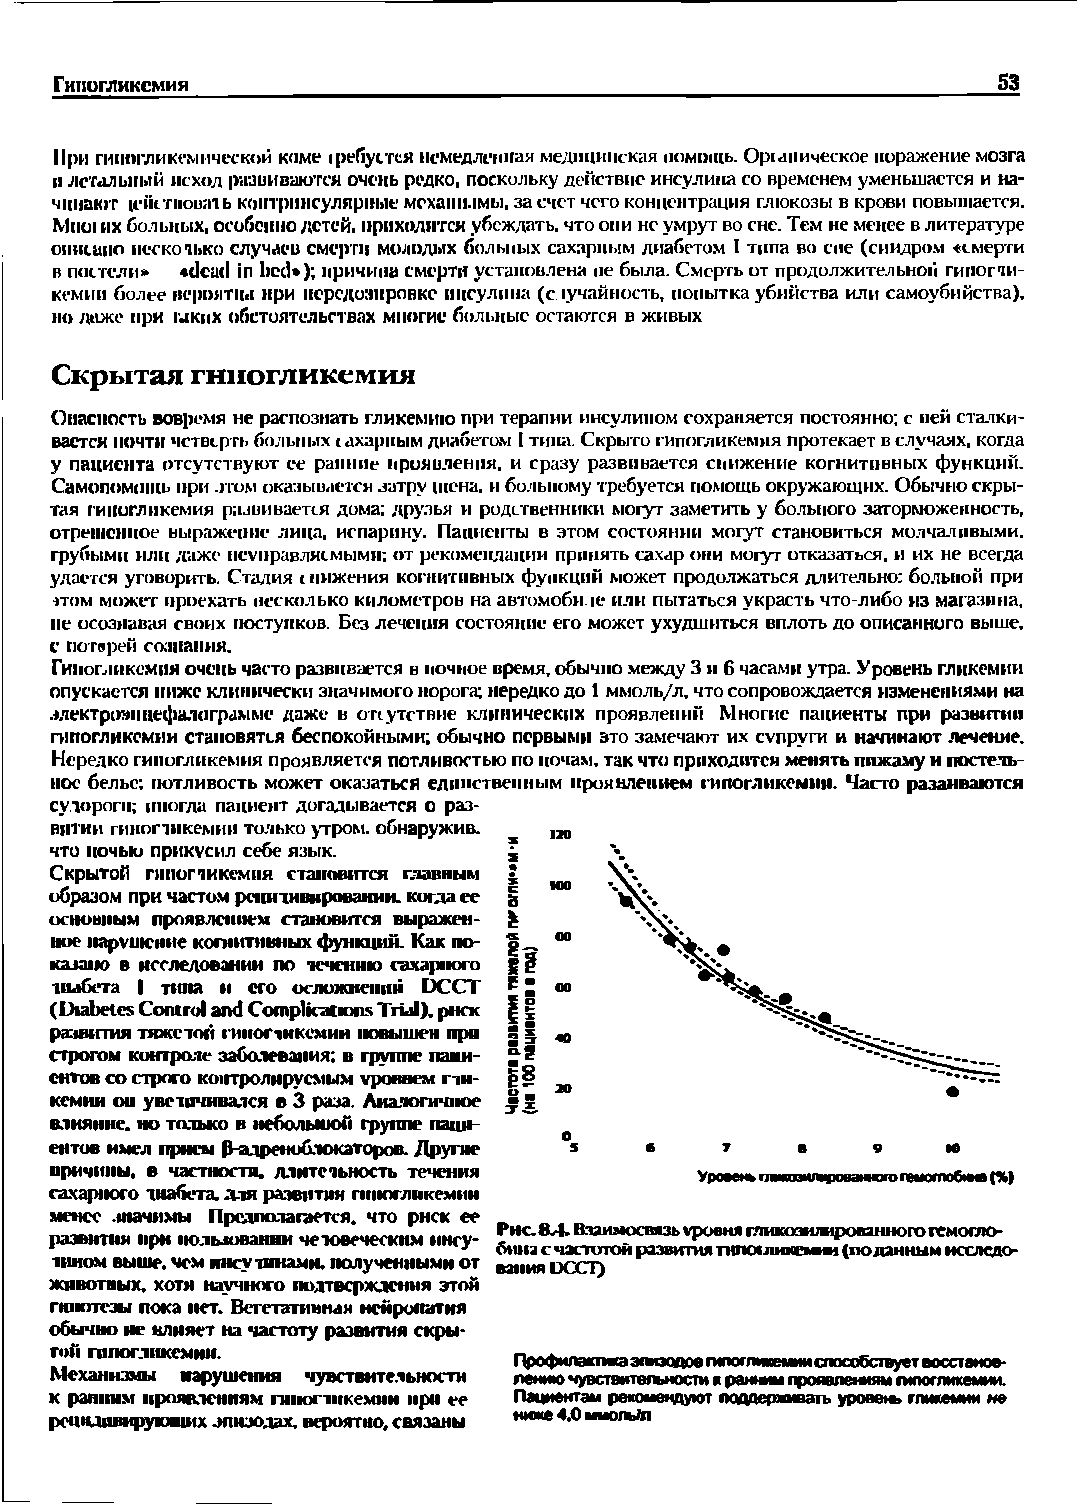 Рис. 8Л. Взаимосвязь уровня гяикозижфованного гемоглобина с частотой развития гнпо ли <е в 1 (поданным исследования DCCI)...